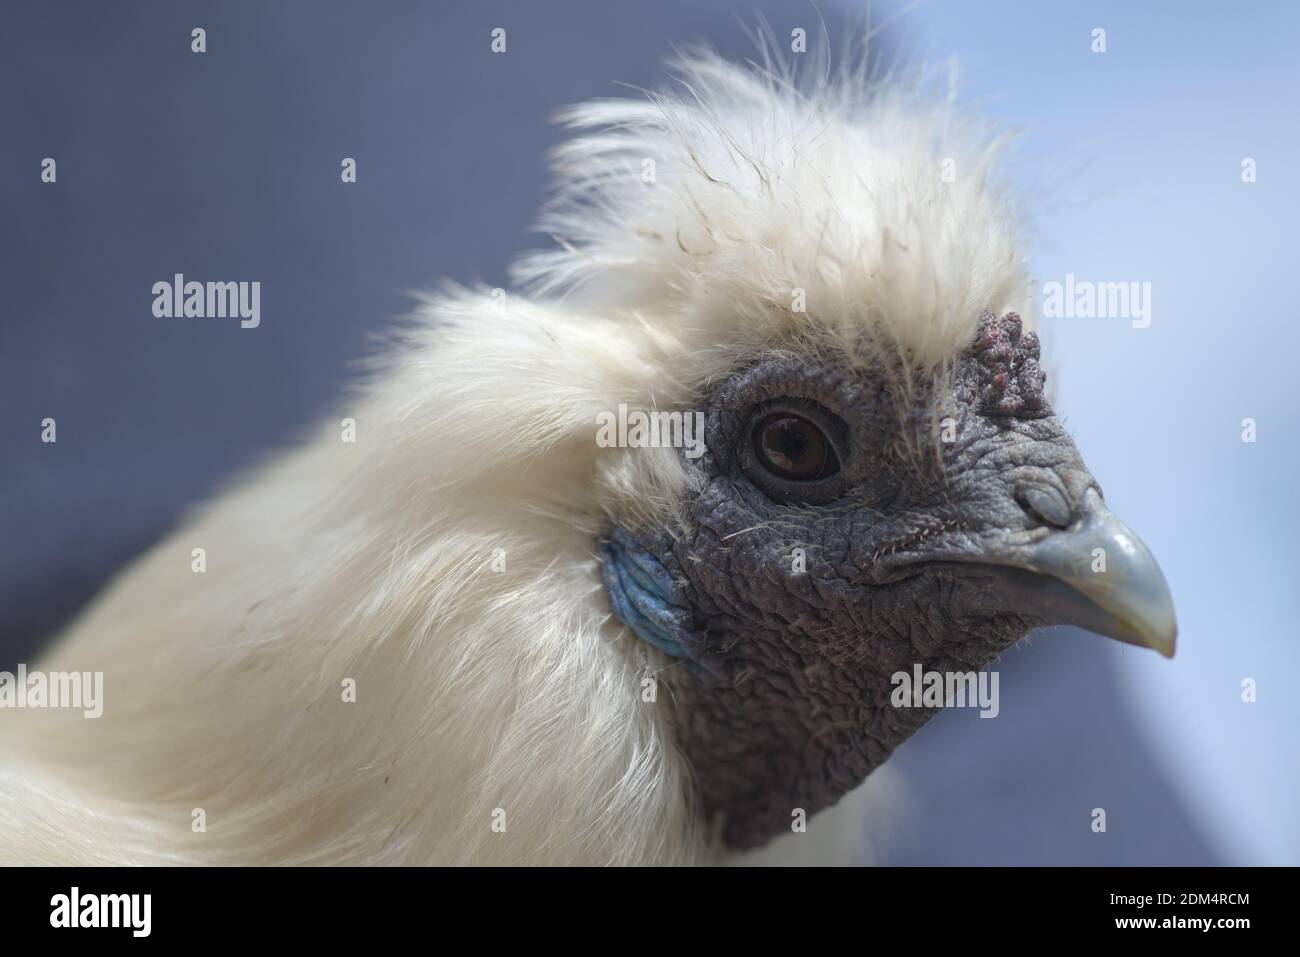 1 - Super gros plan macro portrait du visage d'un poulet blanc silkie. Le détail de la peau dure et froissée, des caractéristiques bleues et des plumes moelleuses est illustré Banque D'Images